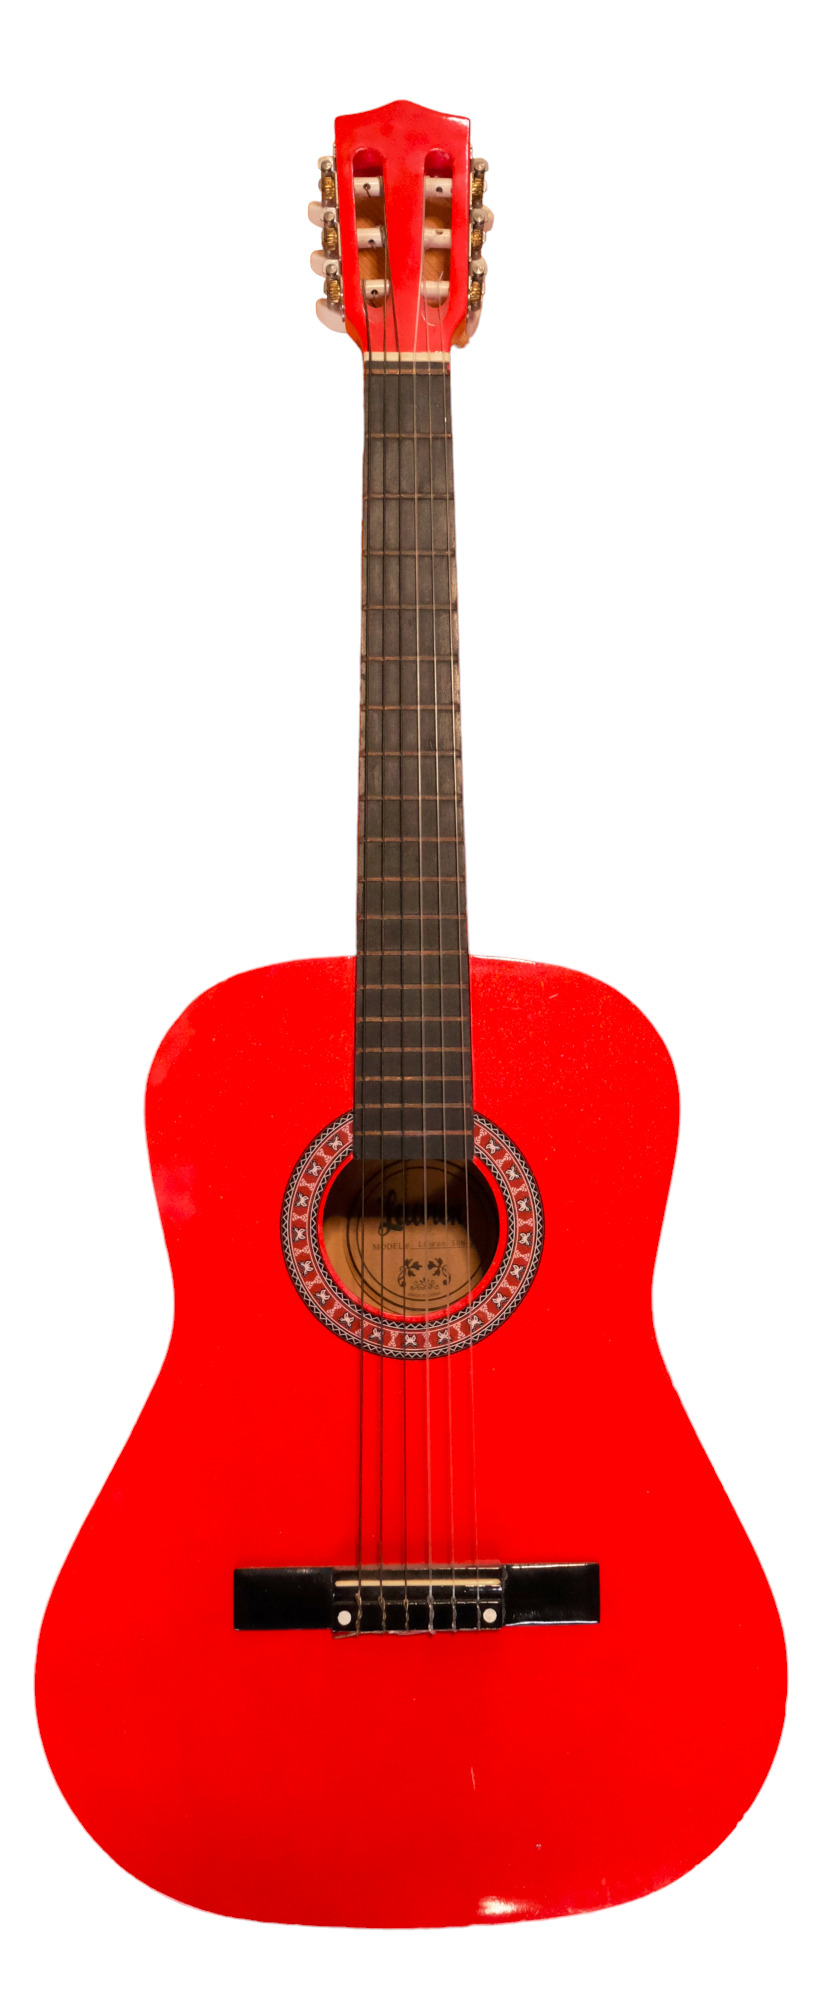 A Lauren acoustic guitar